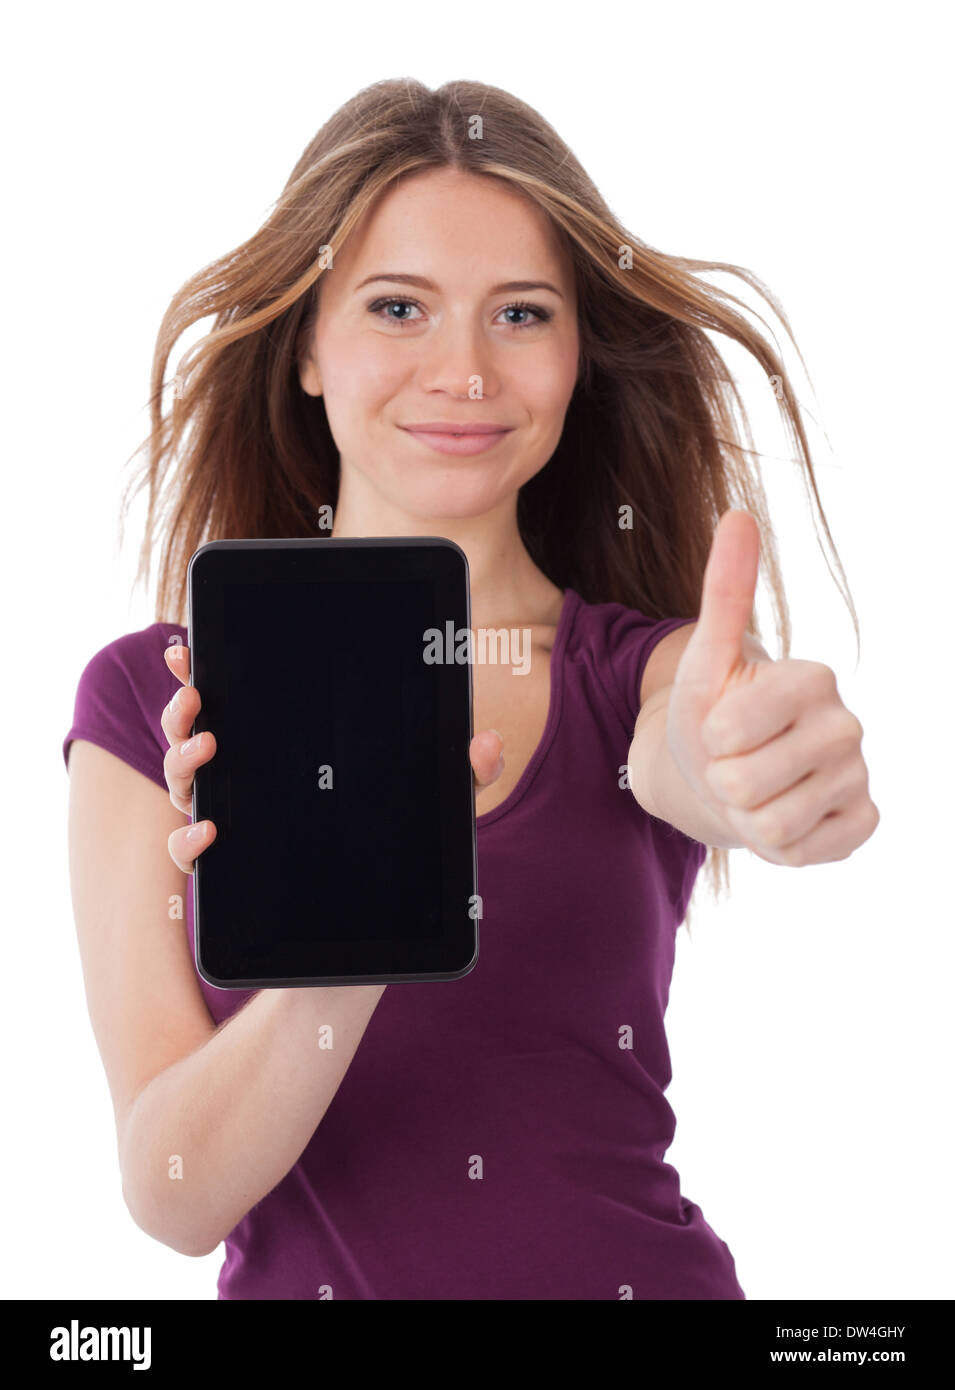 Junge Frau zeigt eine elektronische Tablet und haben eine positive Geste Stockfoto